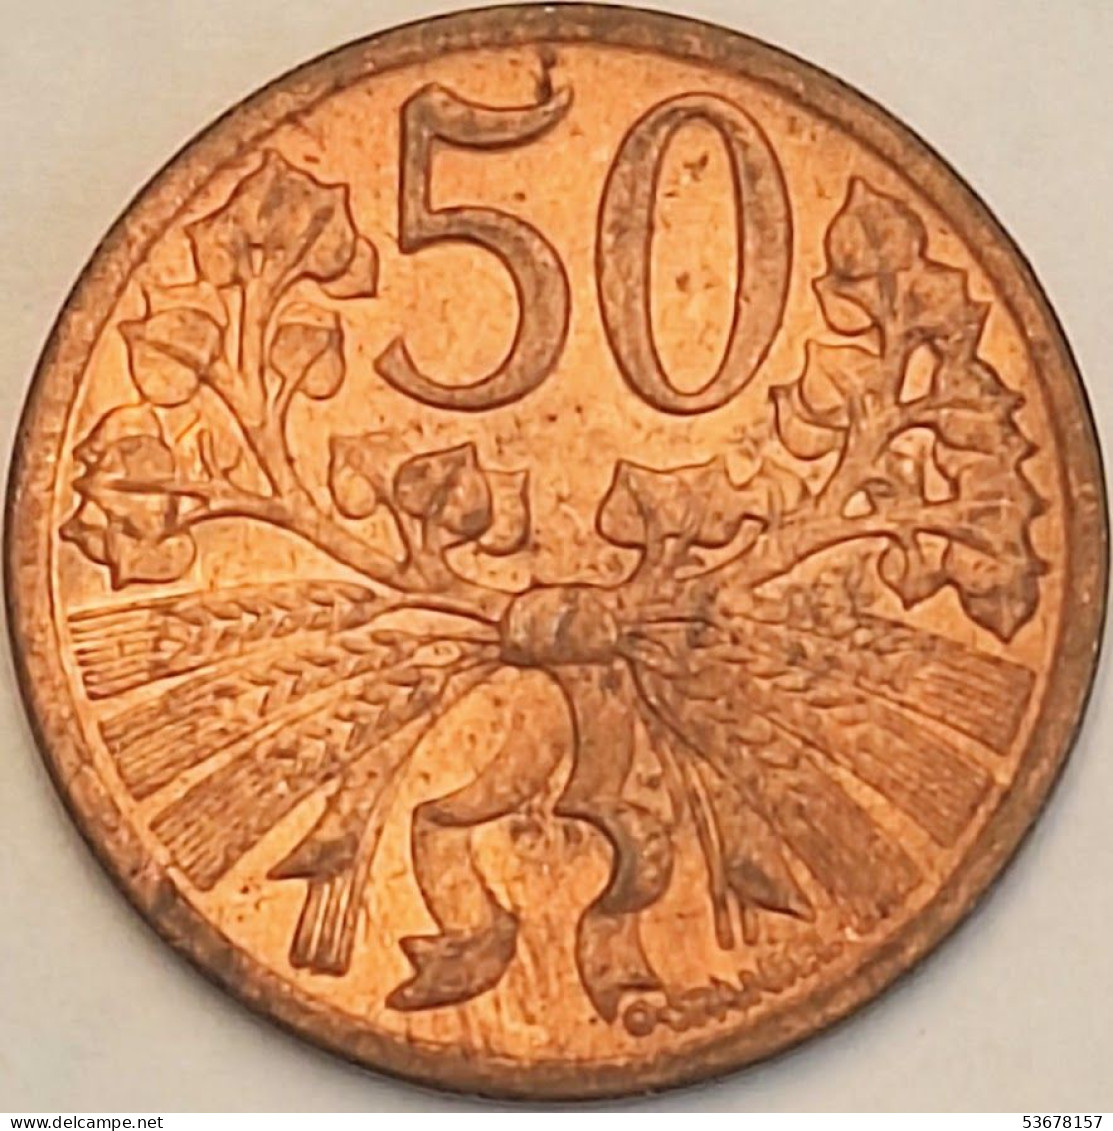 Czechoslovakia - 50 Haleru 1948, KM# 21 (#3679) - Tschechoslowakei